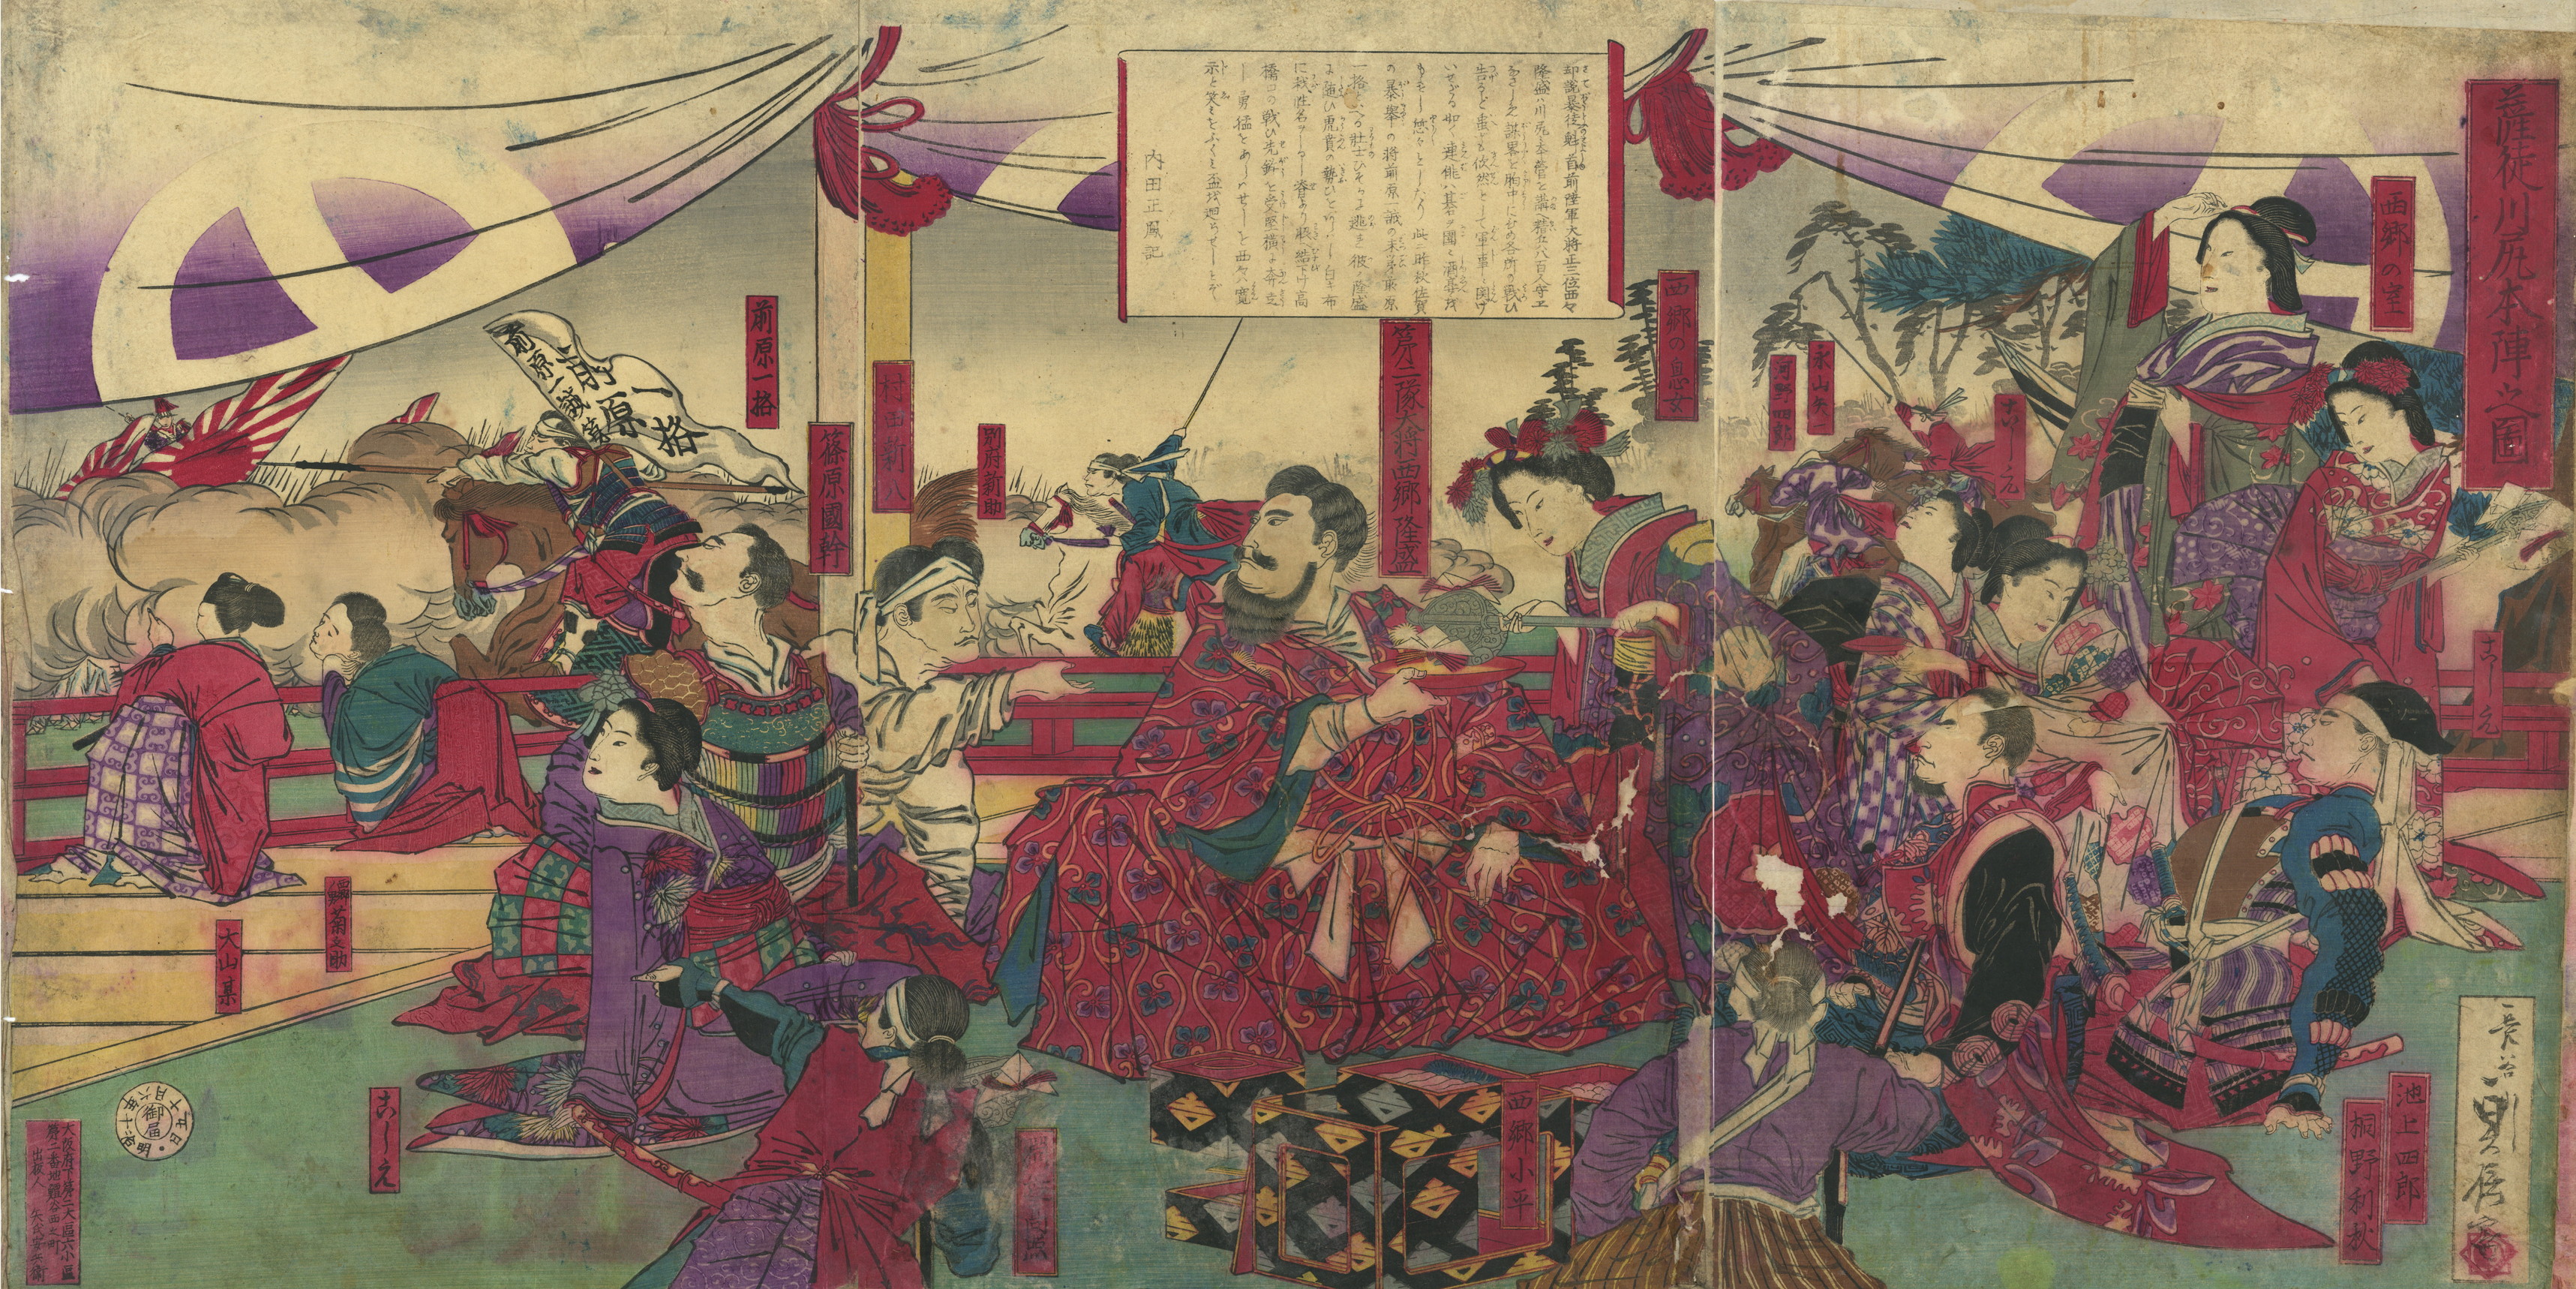 1877-06-15 貞信「薩徒川尻本陣之図」